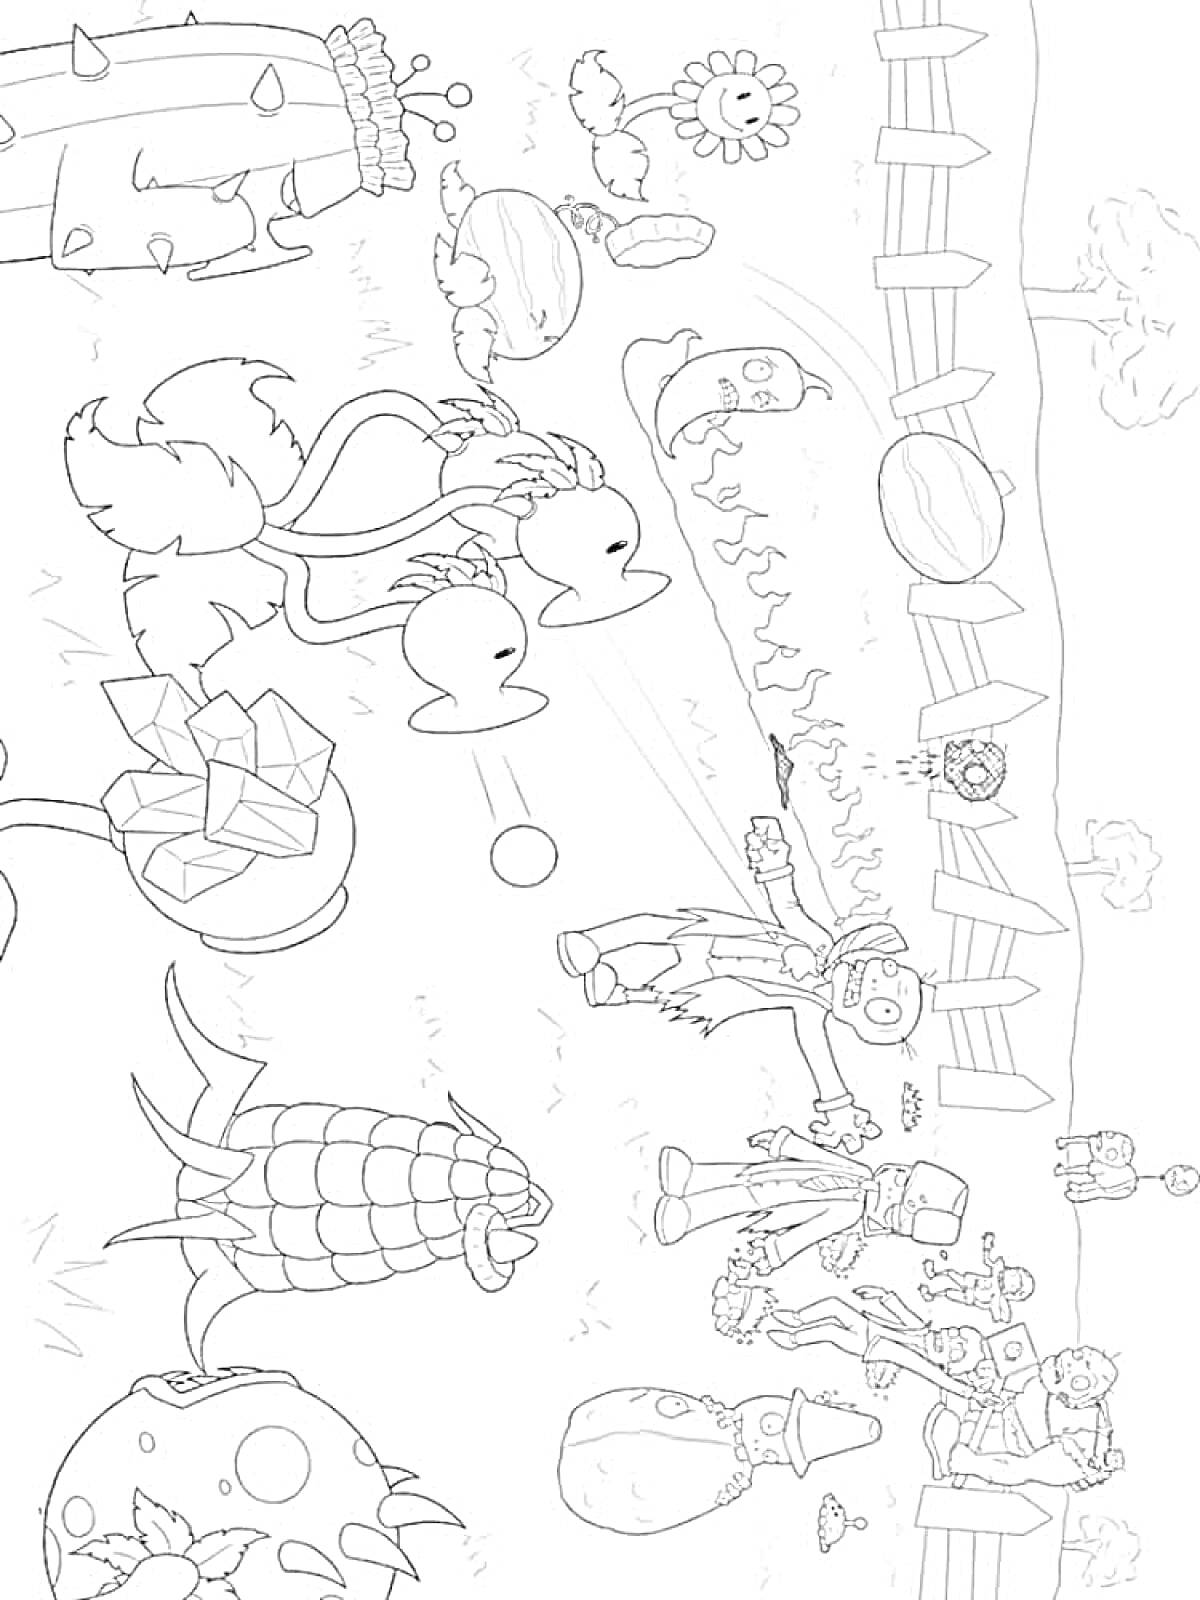 Раскраска Зомби против растений - Зомби, растения, забор, дерево, кактус, подсолнух, капуста, чеснок, кукуруза, костюмированные зомби